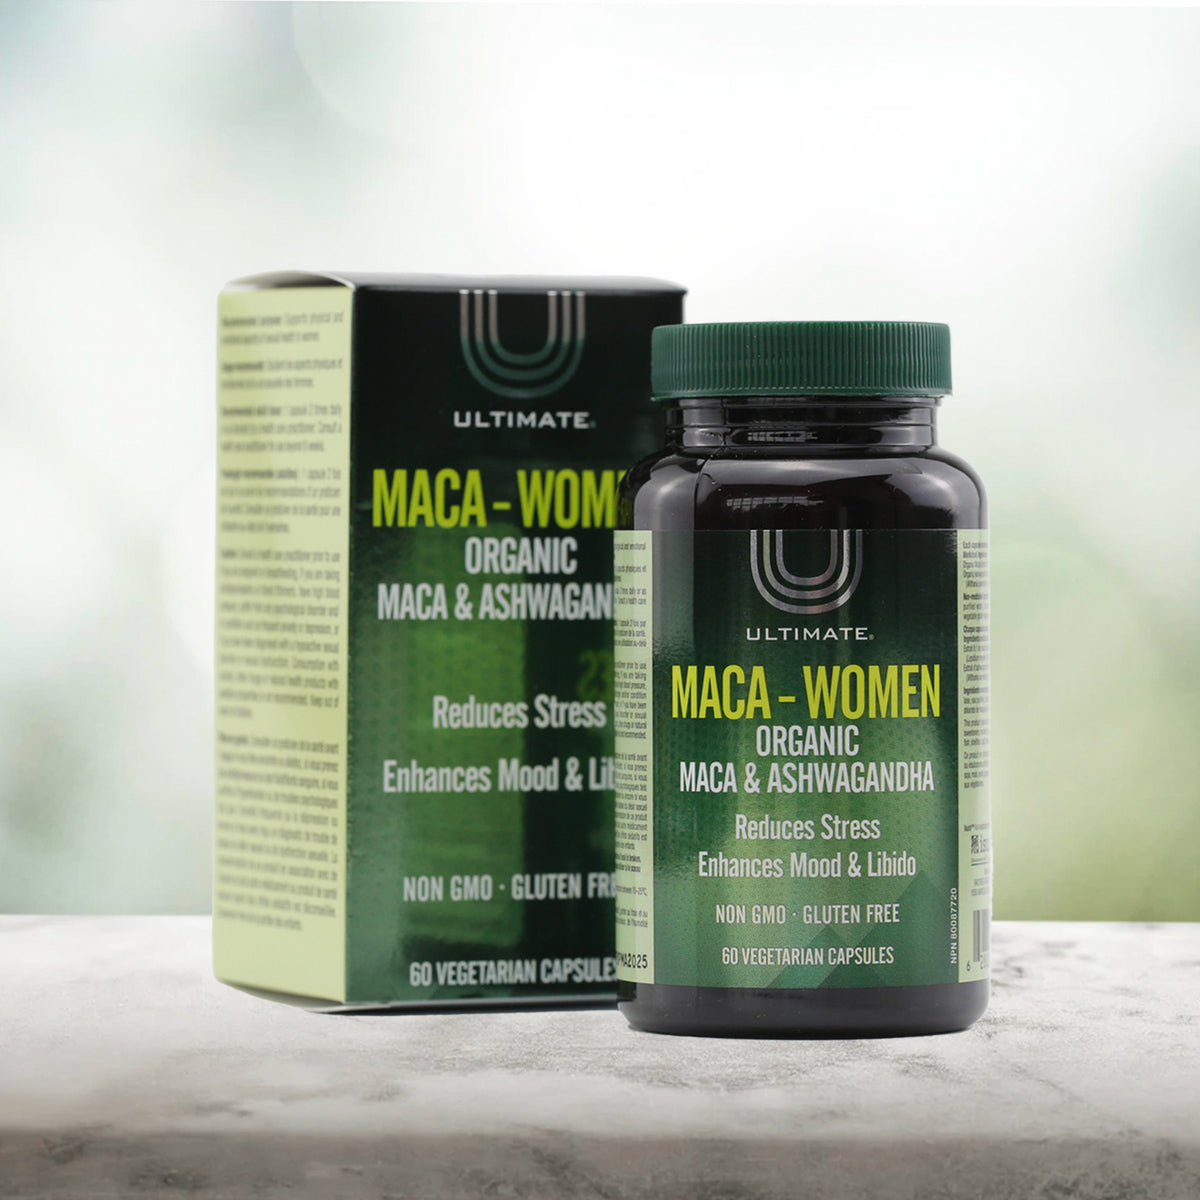 Ultimate Maca-Women Organic Maca and Ashwagandha, 60 capsules